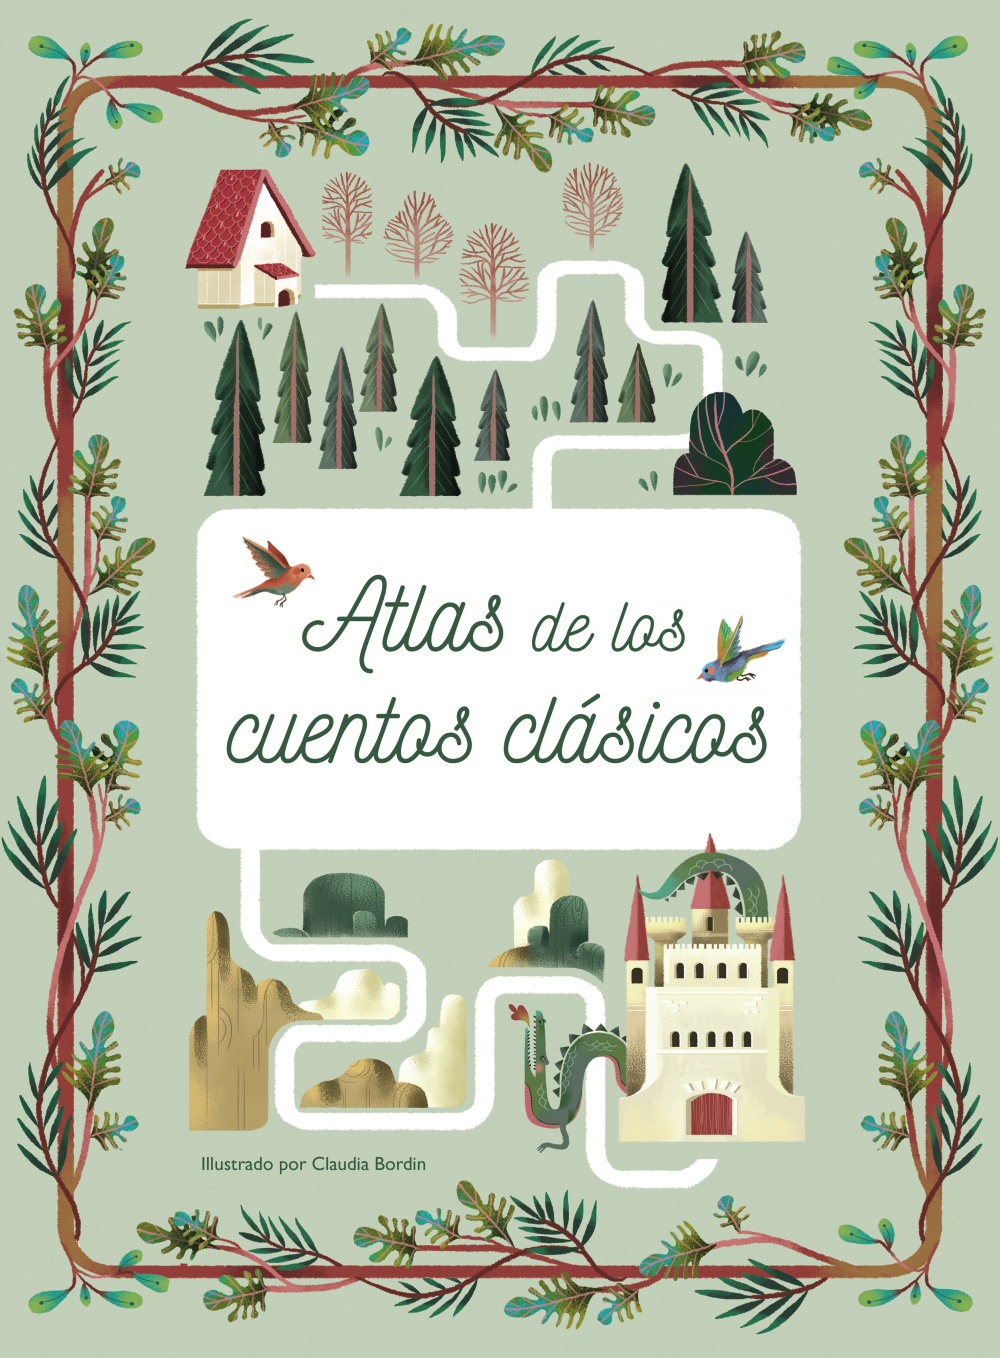  Atlas de los cuentos clásicos "Volando sobre mundos encantados"